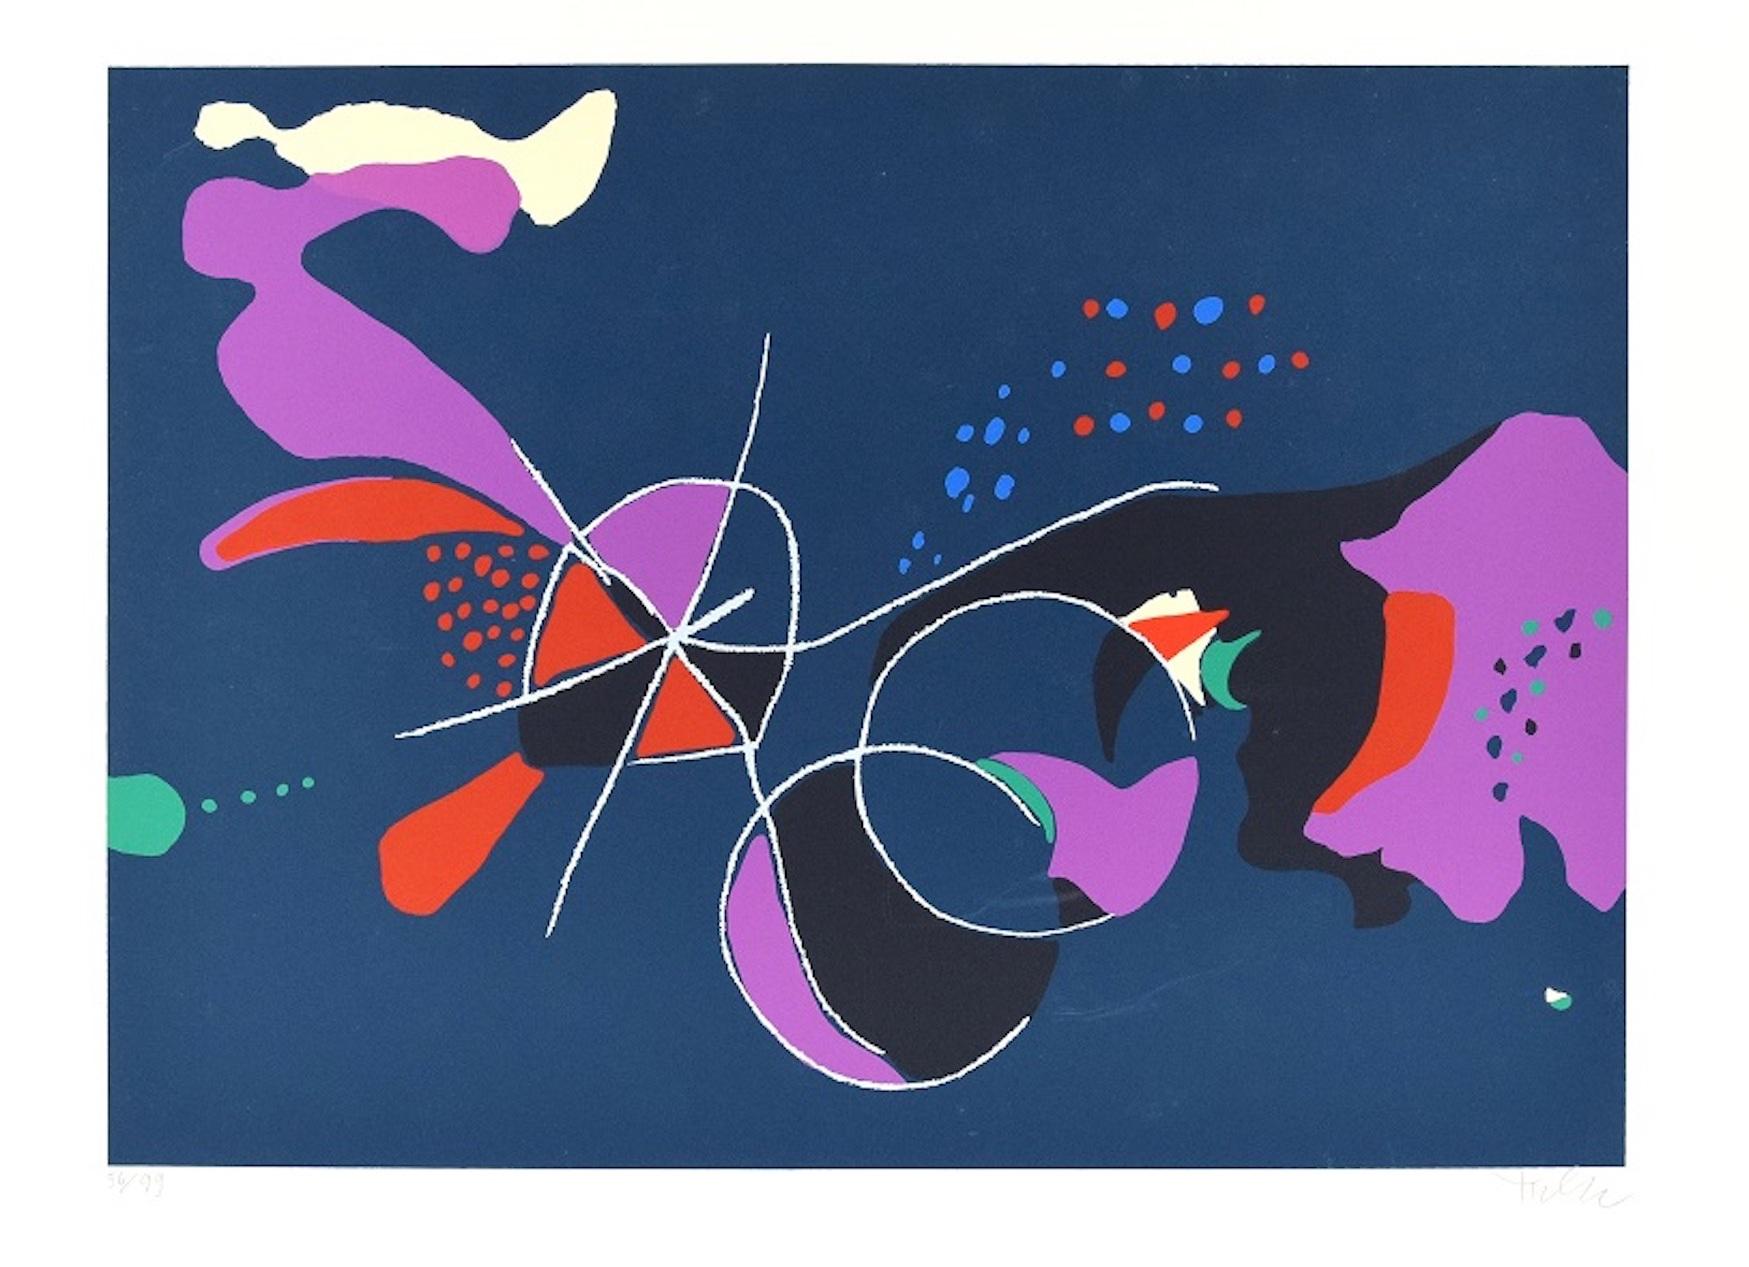 Dimensions de l'image : 35x49 cm.

Halley est une sérigraphie colorée sur papier filigrané Fabriano, réalisée dans les années soixante-dix du XXe siècle par l'artiste italien Wladimiro Tulli, publiée par Euromuseum Editore, une maison d'édition